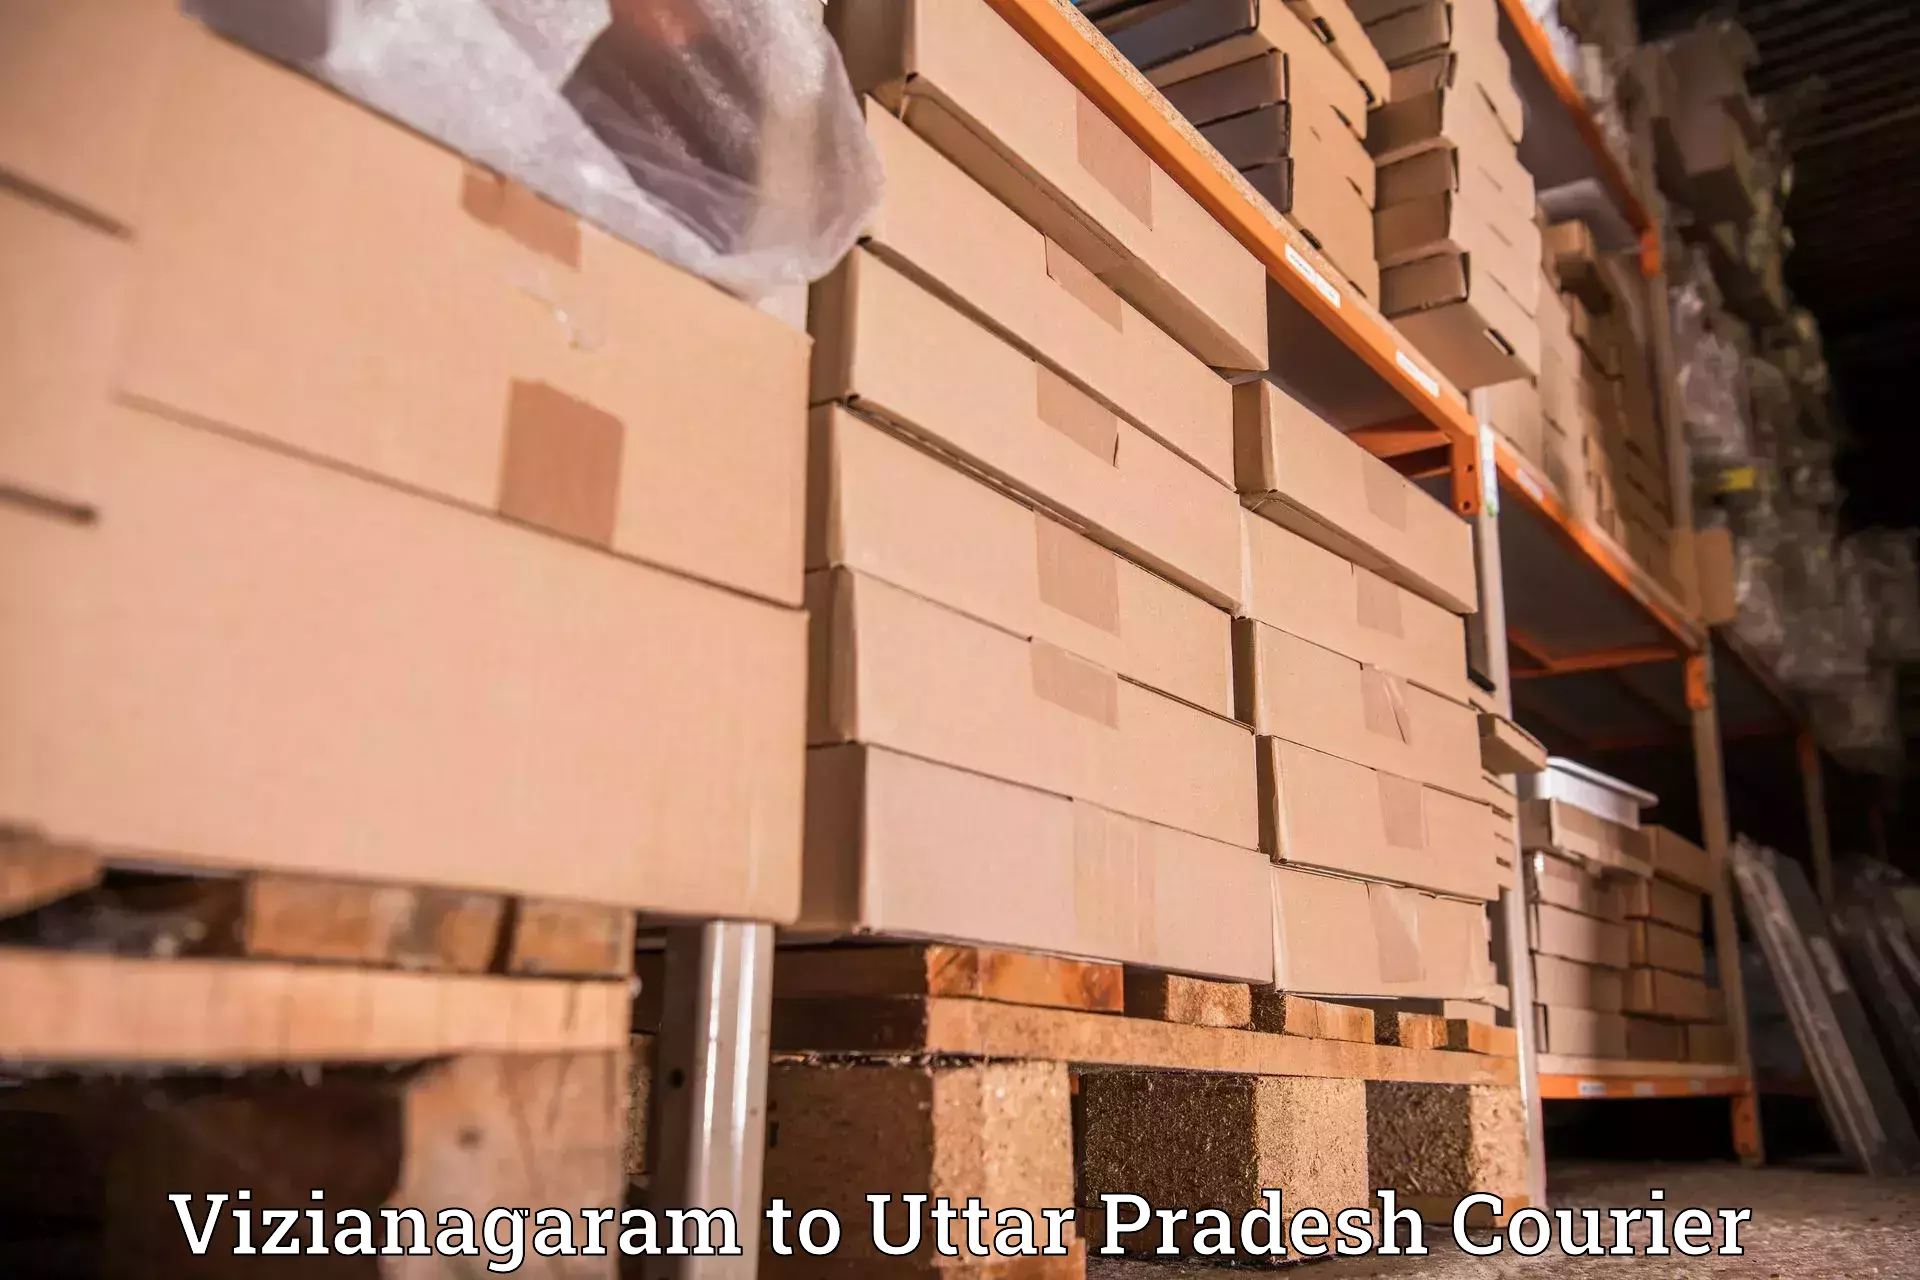 Efficient logistics management Vizianagaram to Etah